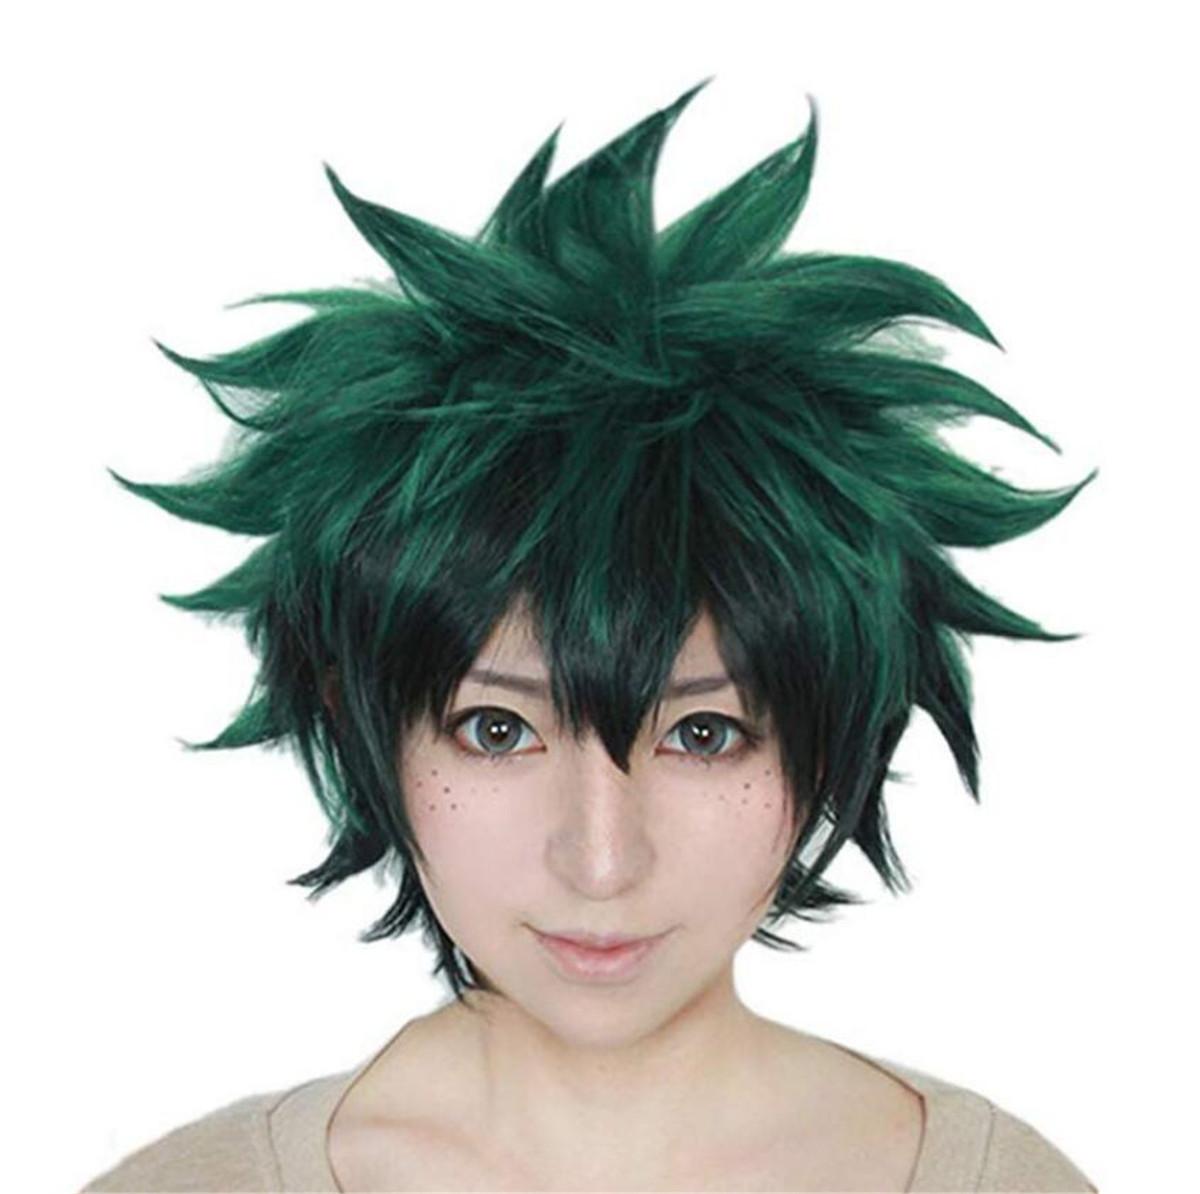 My Hero Academia Izuku Midoriya Green Wig